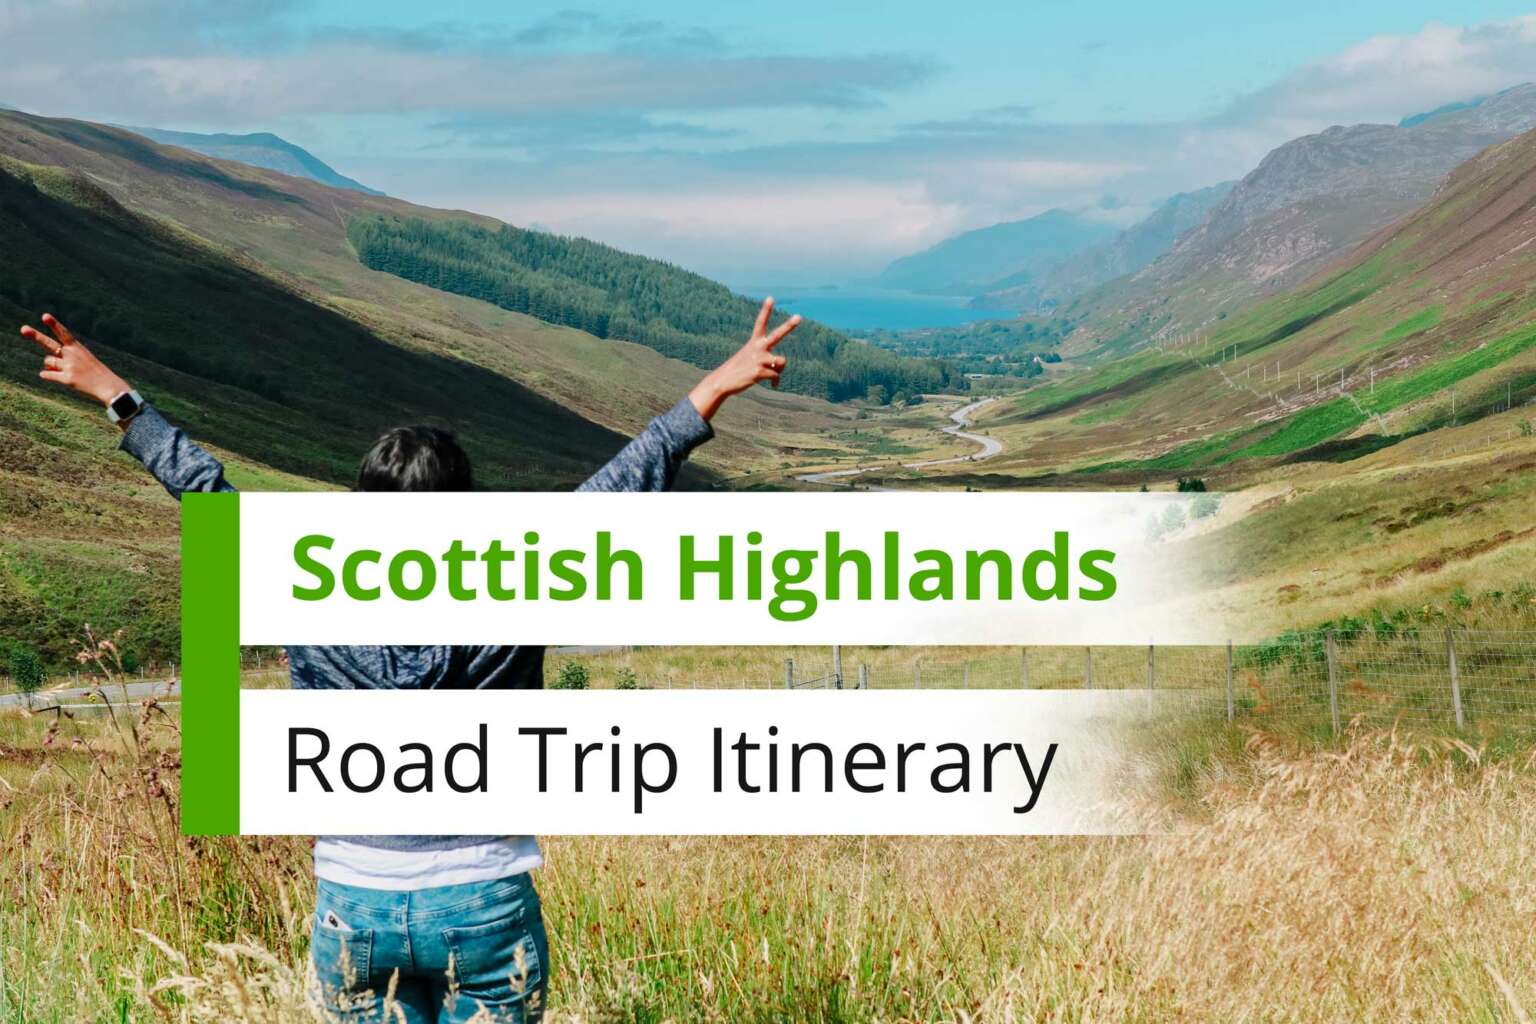 tour groups going to scotland